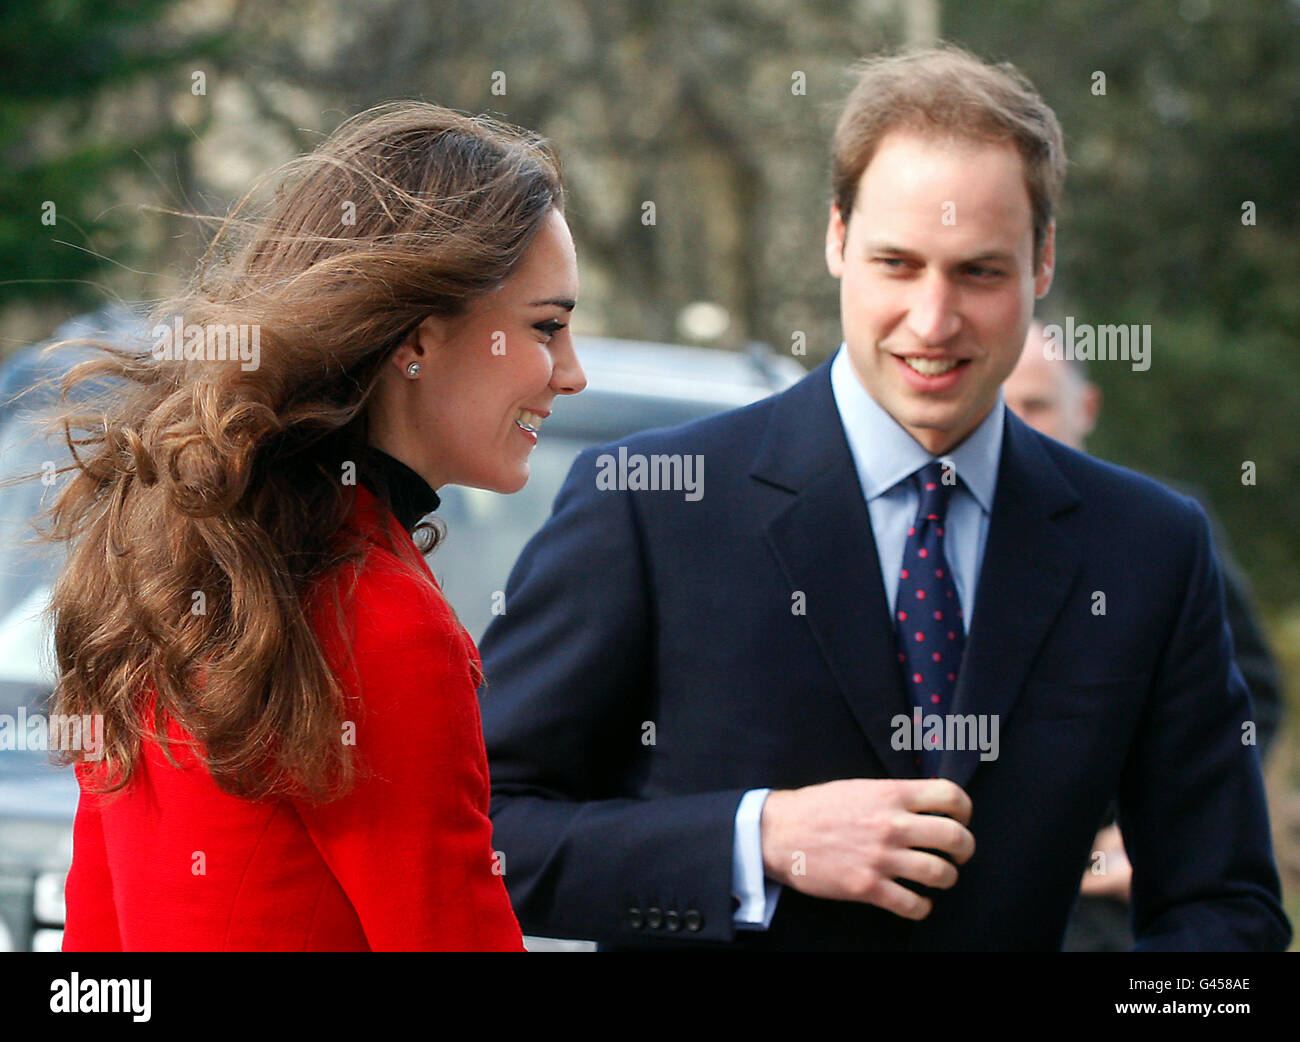 Le Prince William et Kate Middleton arrivent à St Andrews, en Écosse, avant une visite à l'Université de St Andrews, où le couple s'est rencontré pour la première fois. Banque D'Images